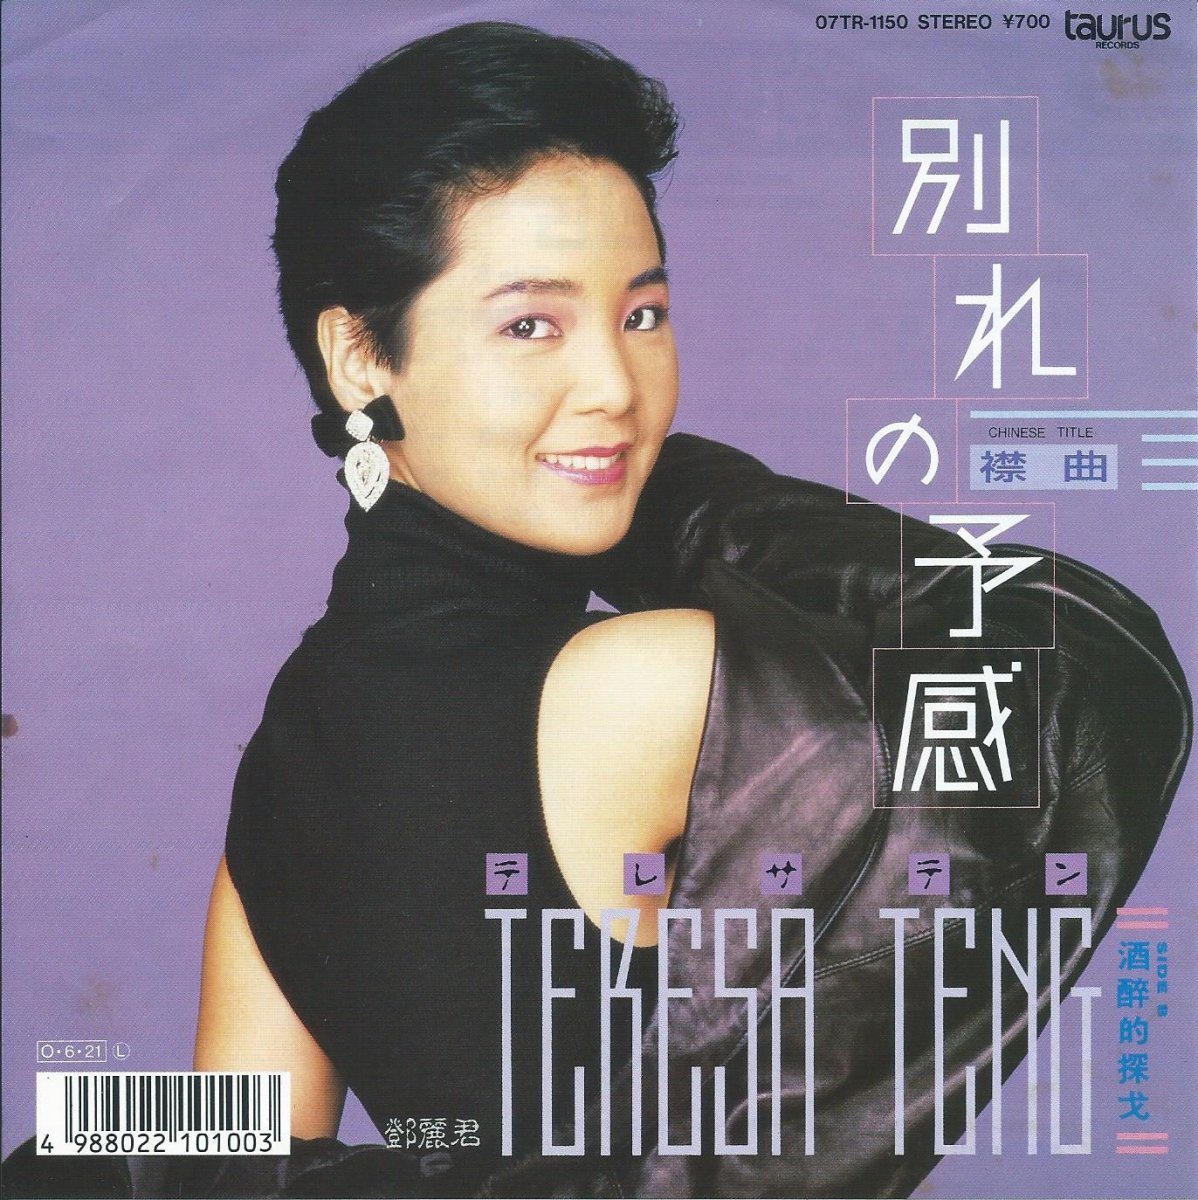 テレサ・テン (鄧麗君,TERESA TENG) / 別れの予感 (襟曲) / 酒酔的探伐 